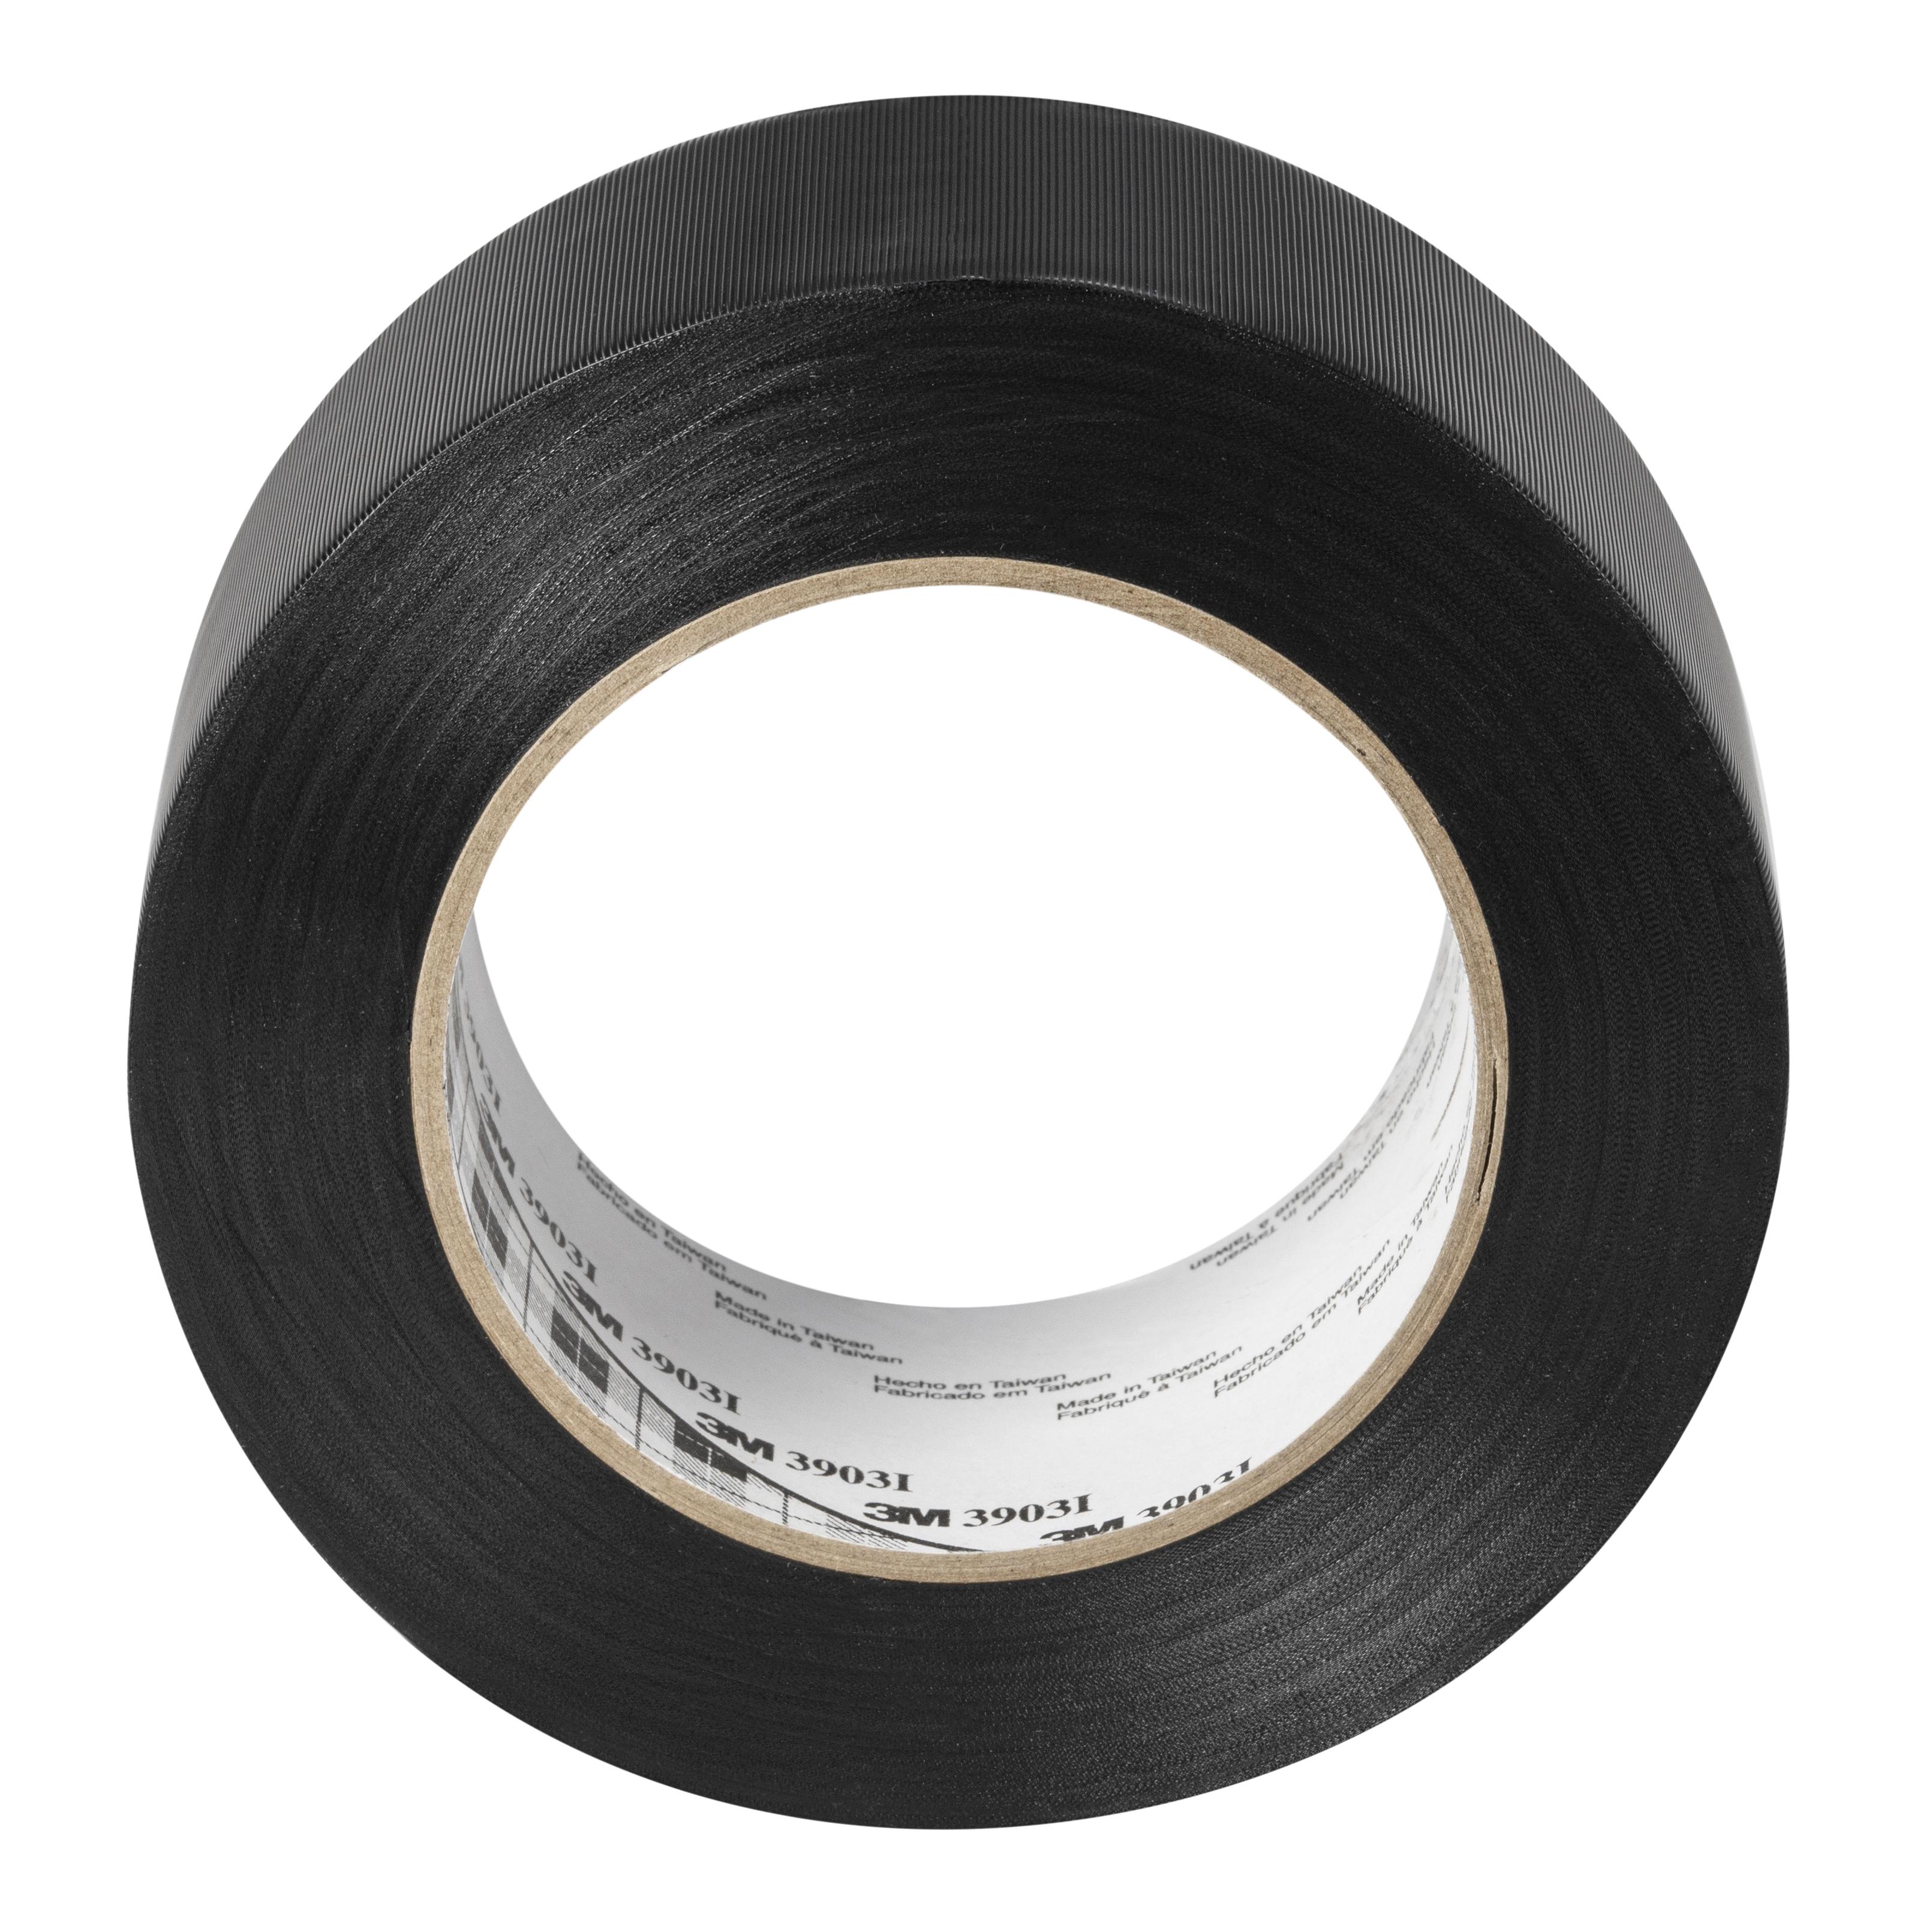 3M™ Vinyl-Klebeband 3903i, Schwarz, 50 mm x 50 m